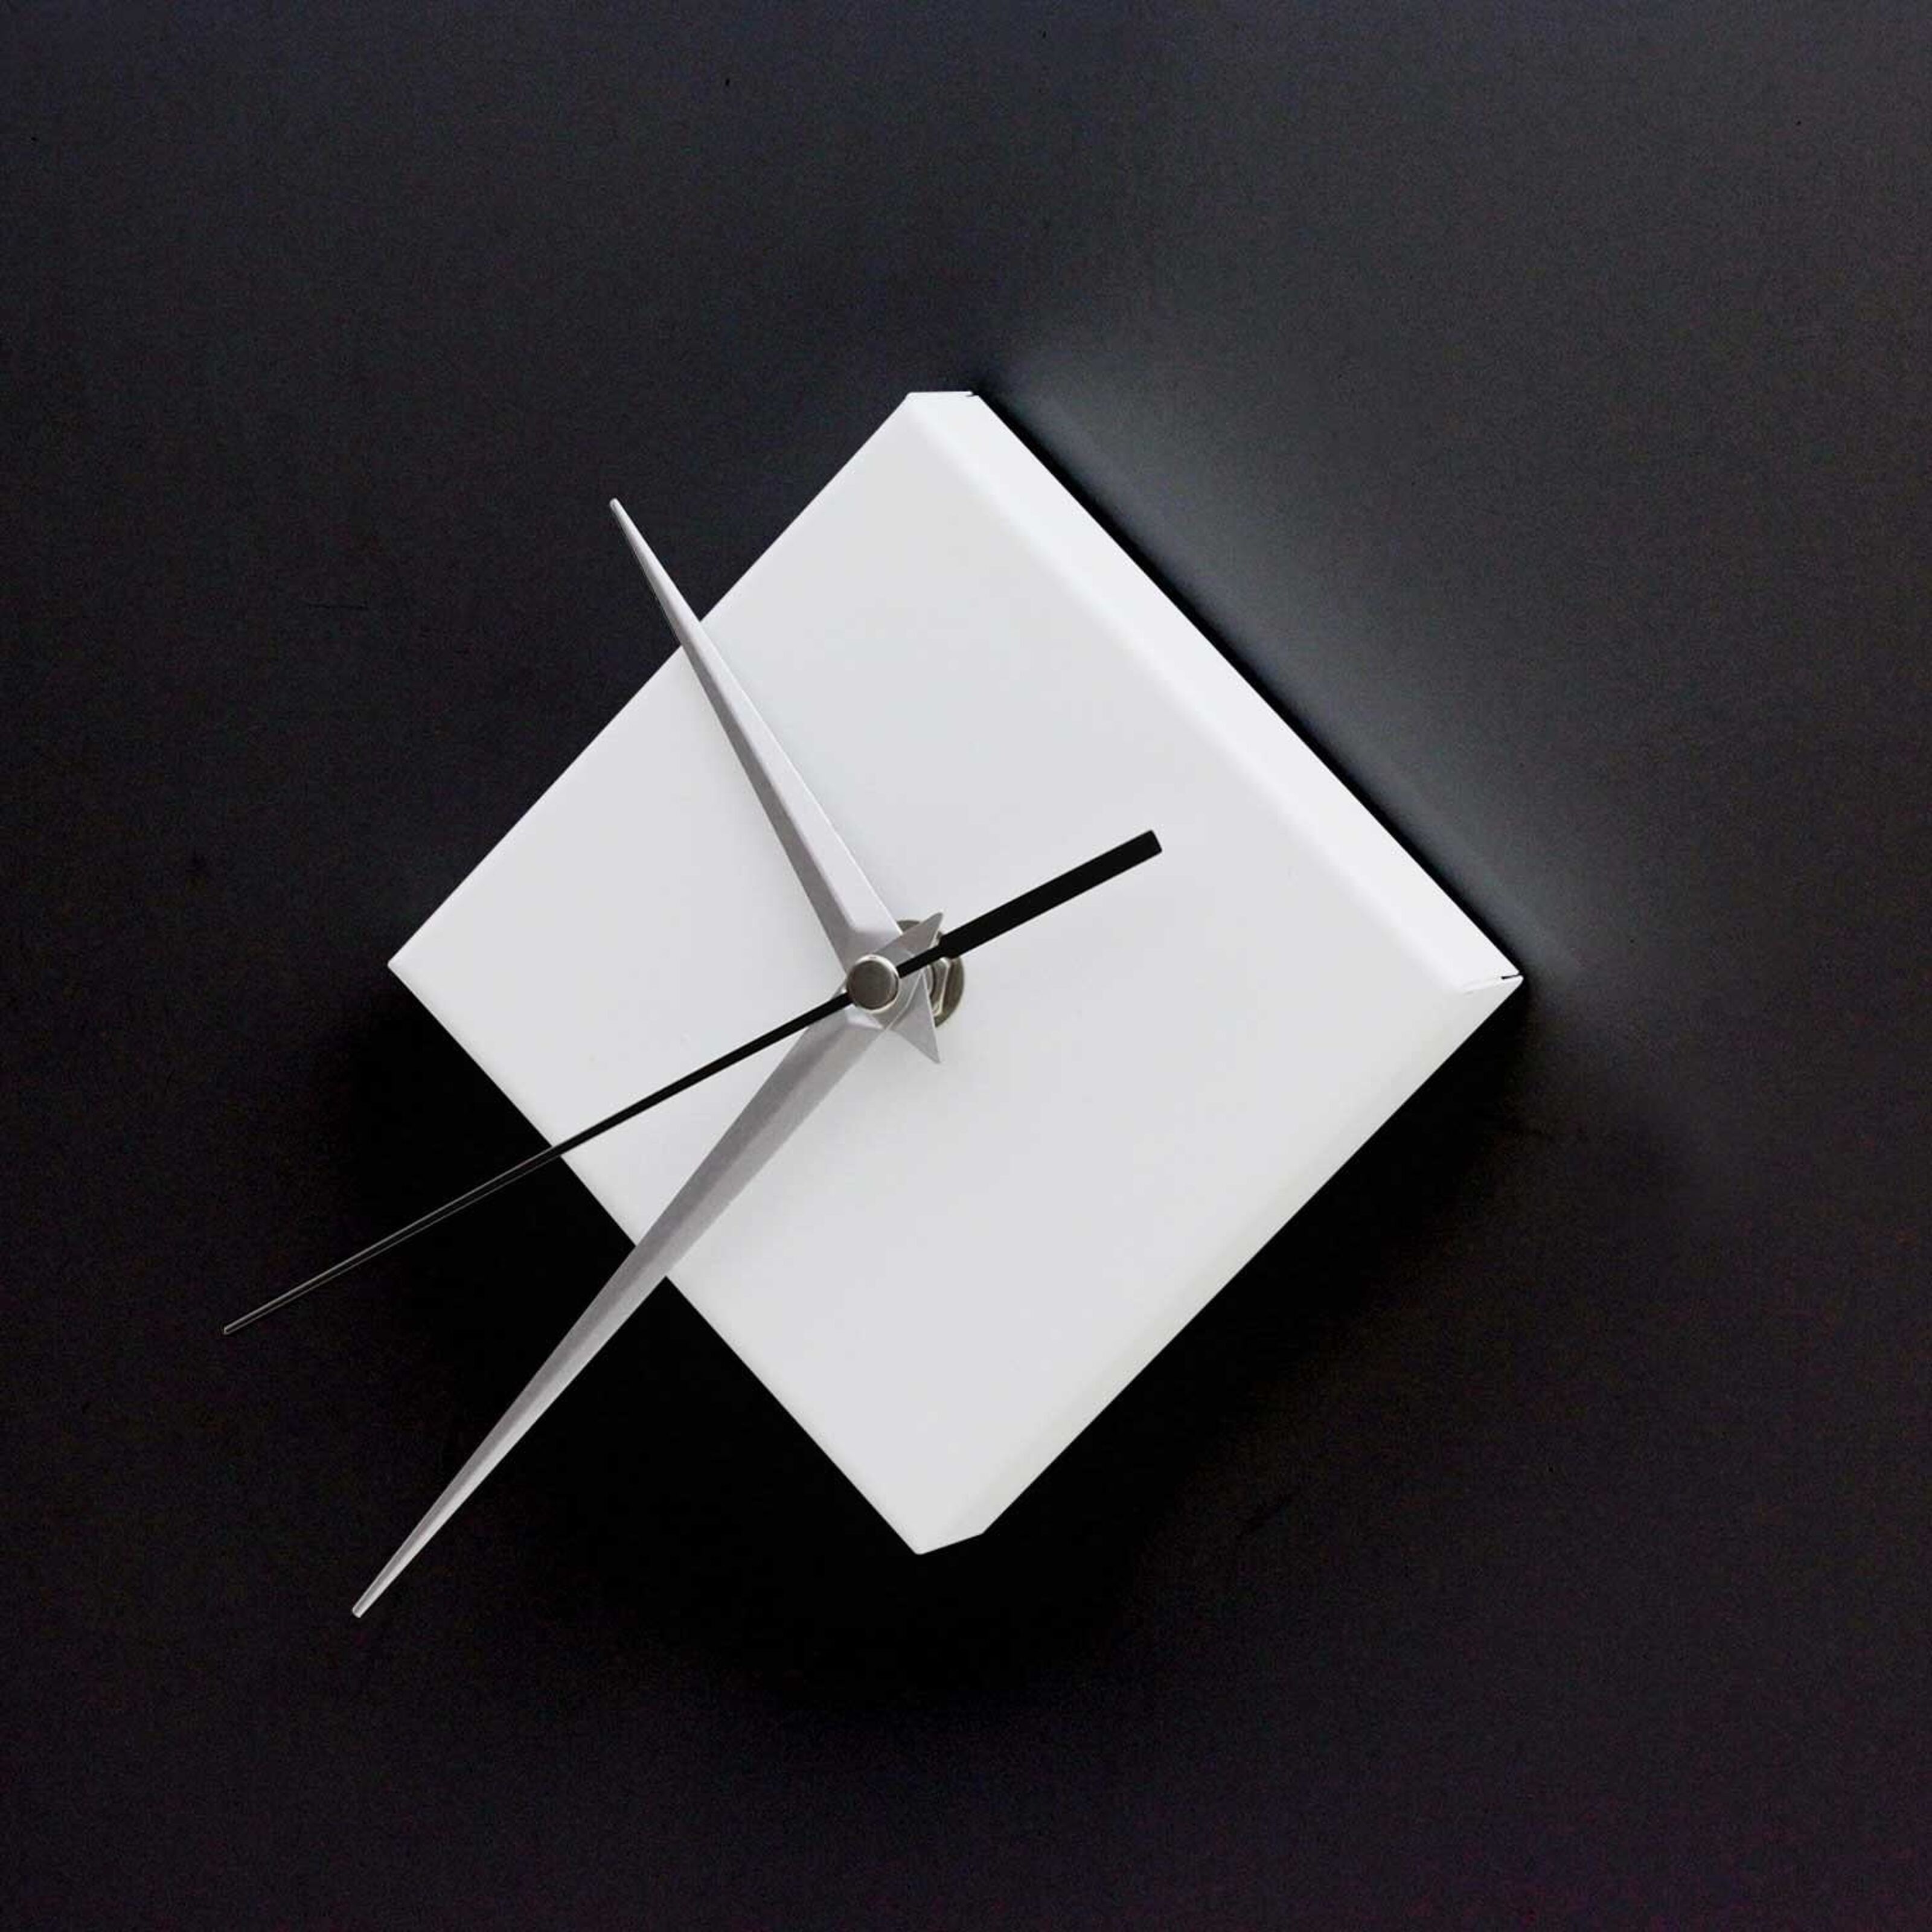 Kaufen Sie Quadratische Magnetuhr, matt weiß, elegantes modernes Design zu  Großhandelspreisen